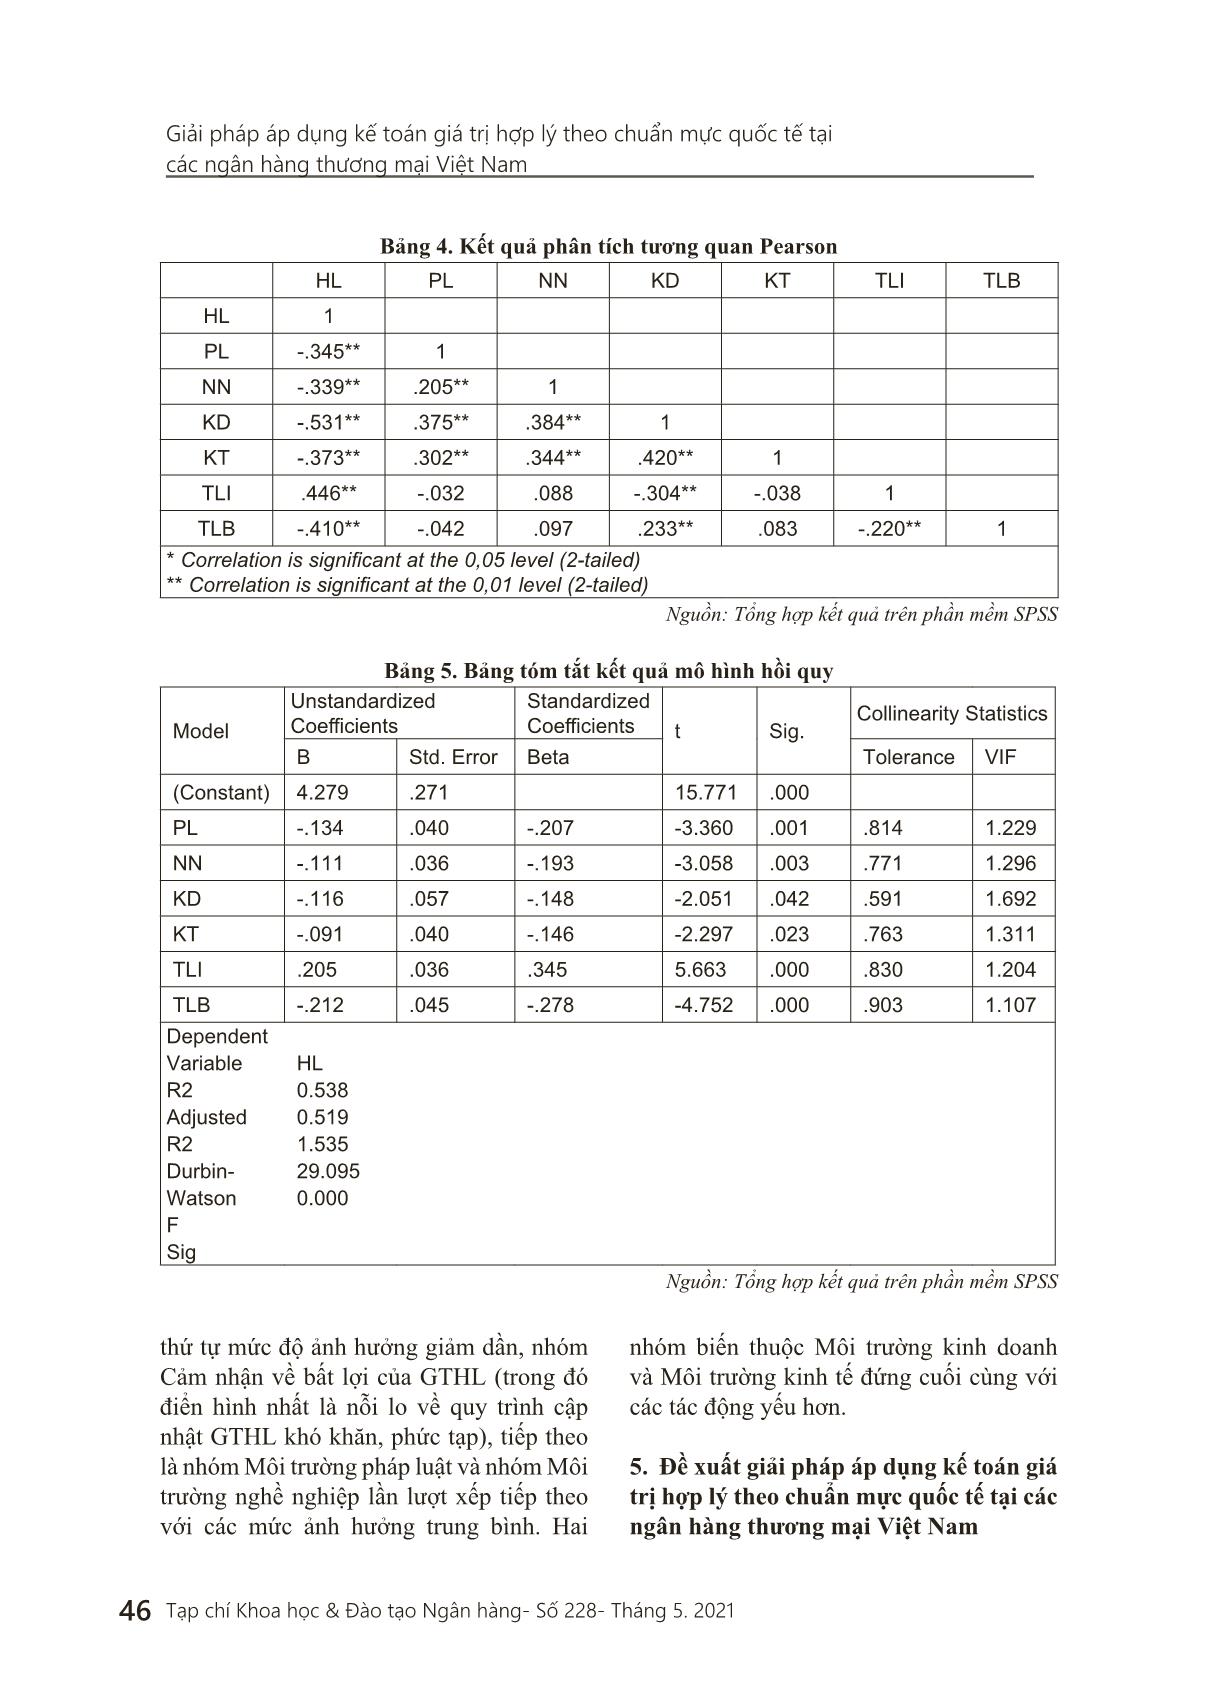 Giải pháp áp dụng kế toán giá trị hợp lý theo chuẩn mực quốc tế tại các ngân hàng thương mại Việt Nam trang 9